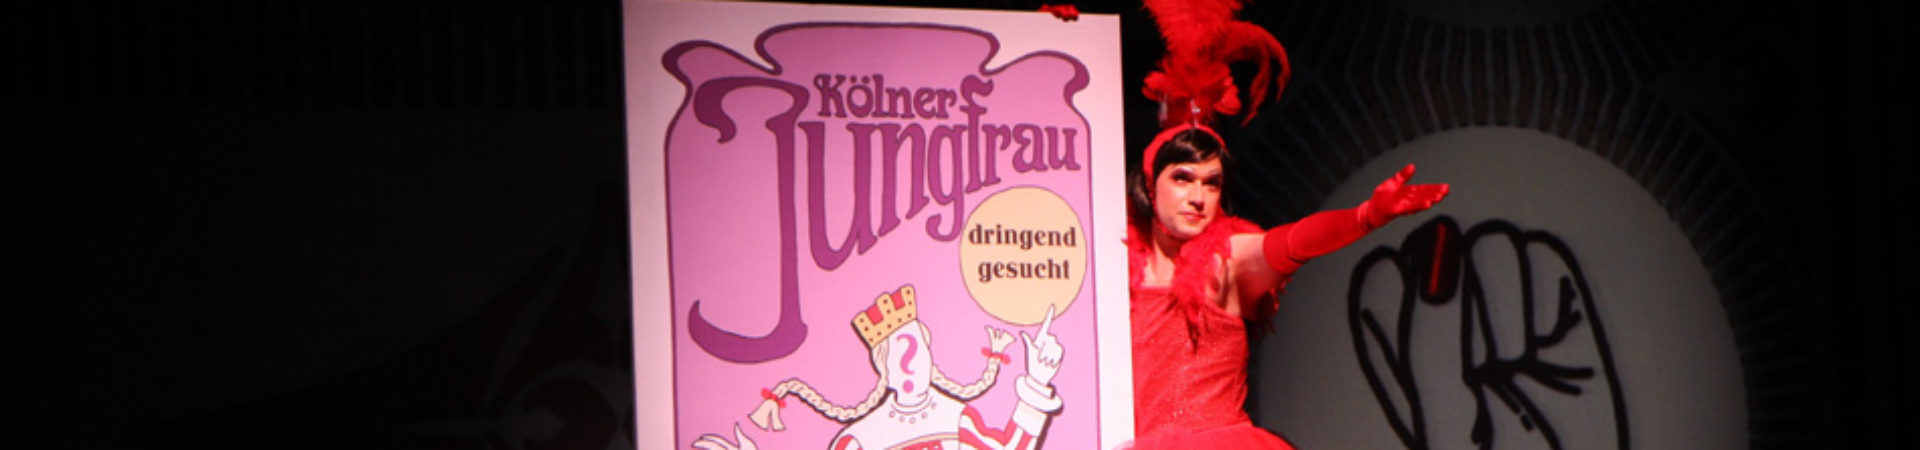 Kölner Jungfrau - dringend gesucht - Divertissementchen 2012 - Tänzer mit Plakat